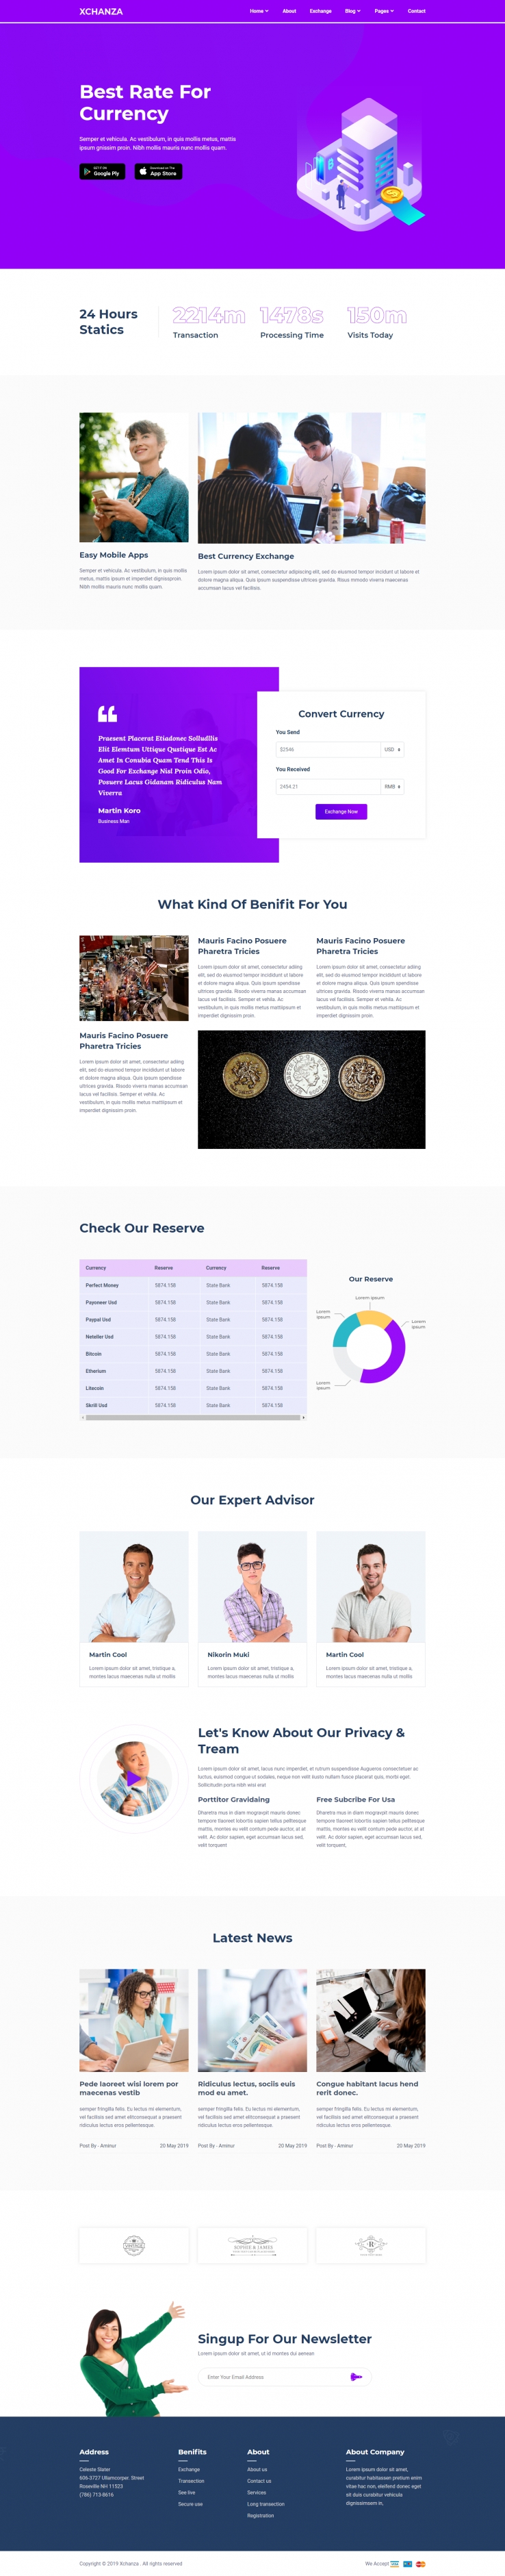 紫色欧美风格的银行货币交易企业网站源码下载